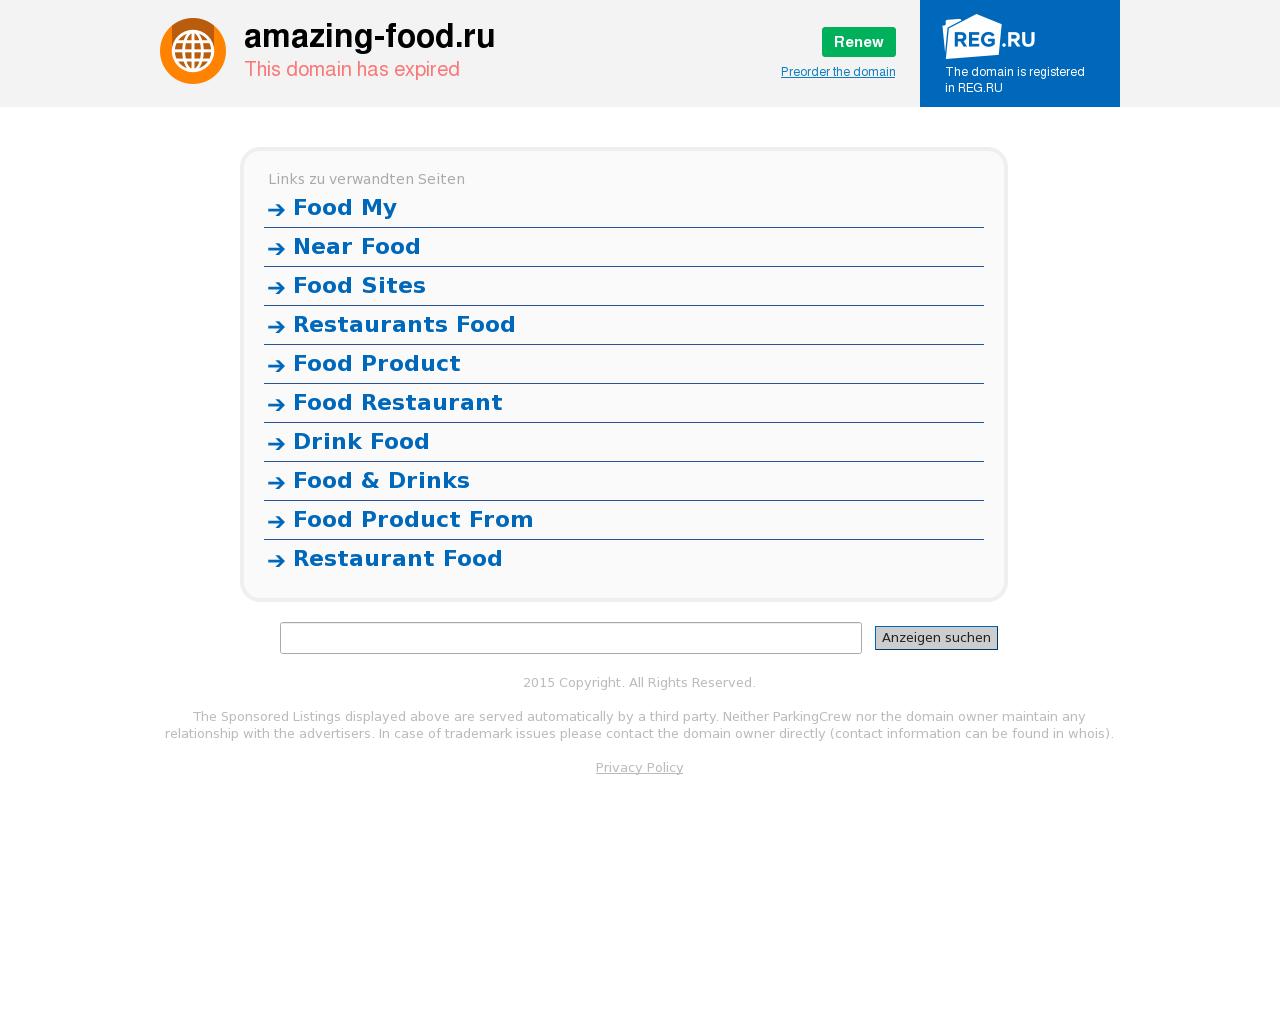 Изображение сайта amazing-food.ru в разрешении 1280x1024